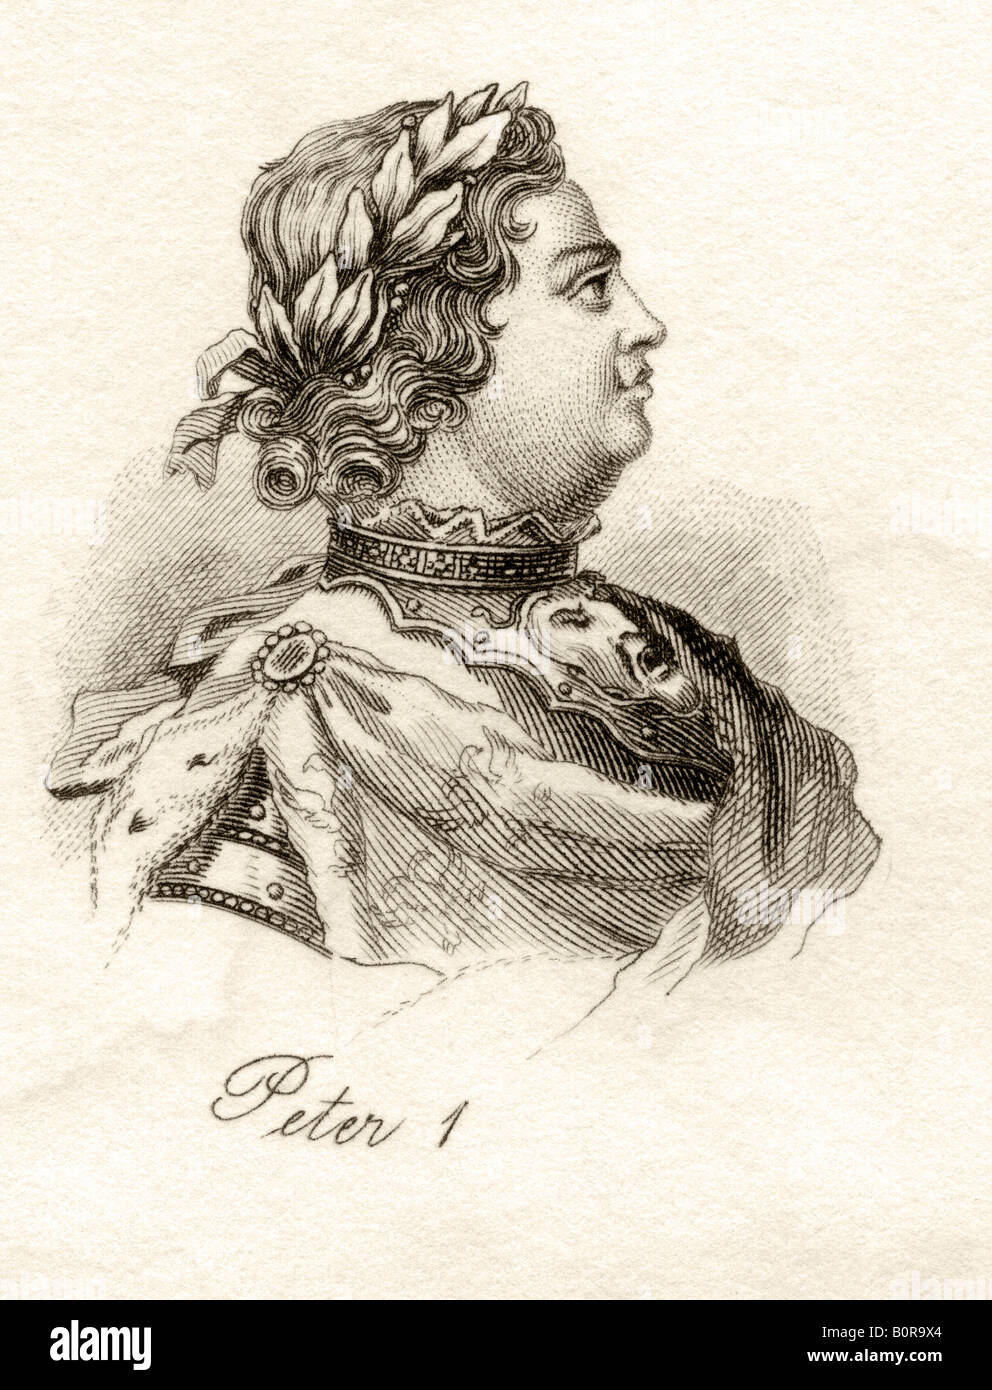 Pierre I ou Pierre le Grand, 1672 - 1725. Tsar de Russie, 1682 - 1725. Tiré du livre Crabbs Historical Dictionary, publié en 1825. Banque D'Images